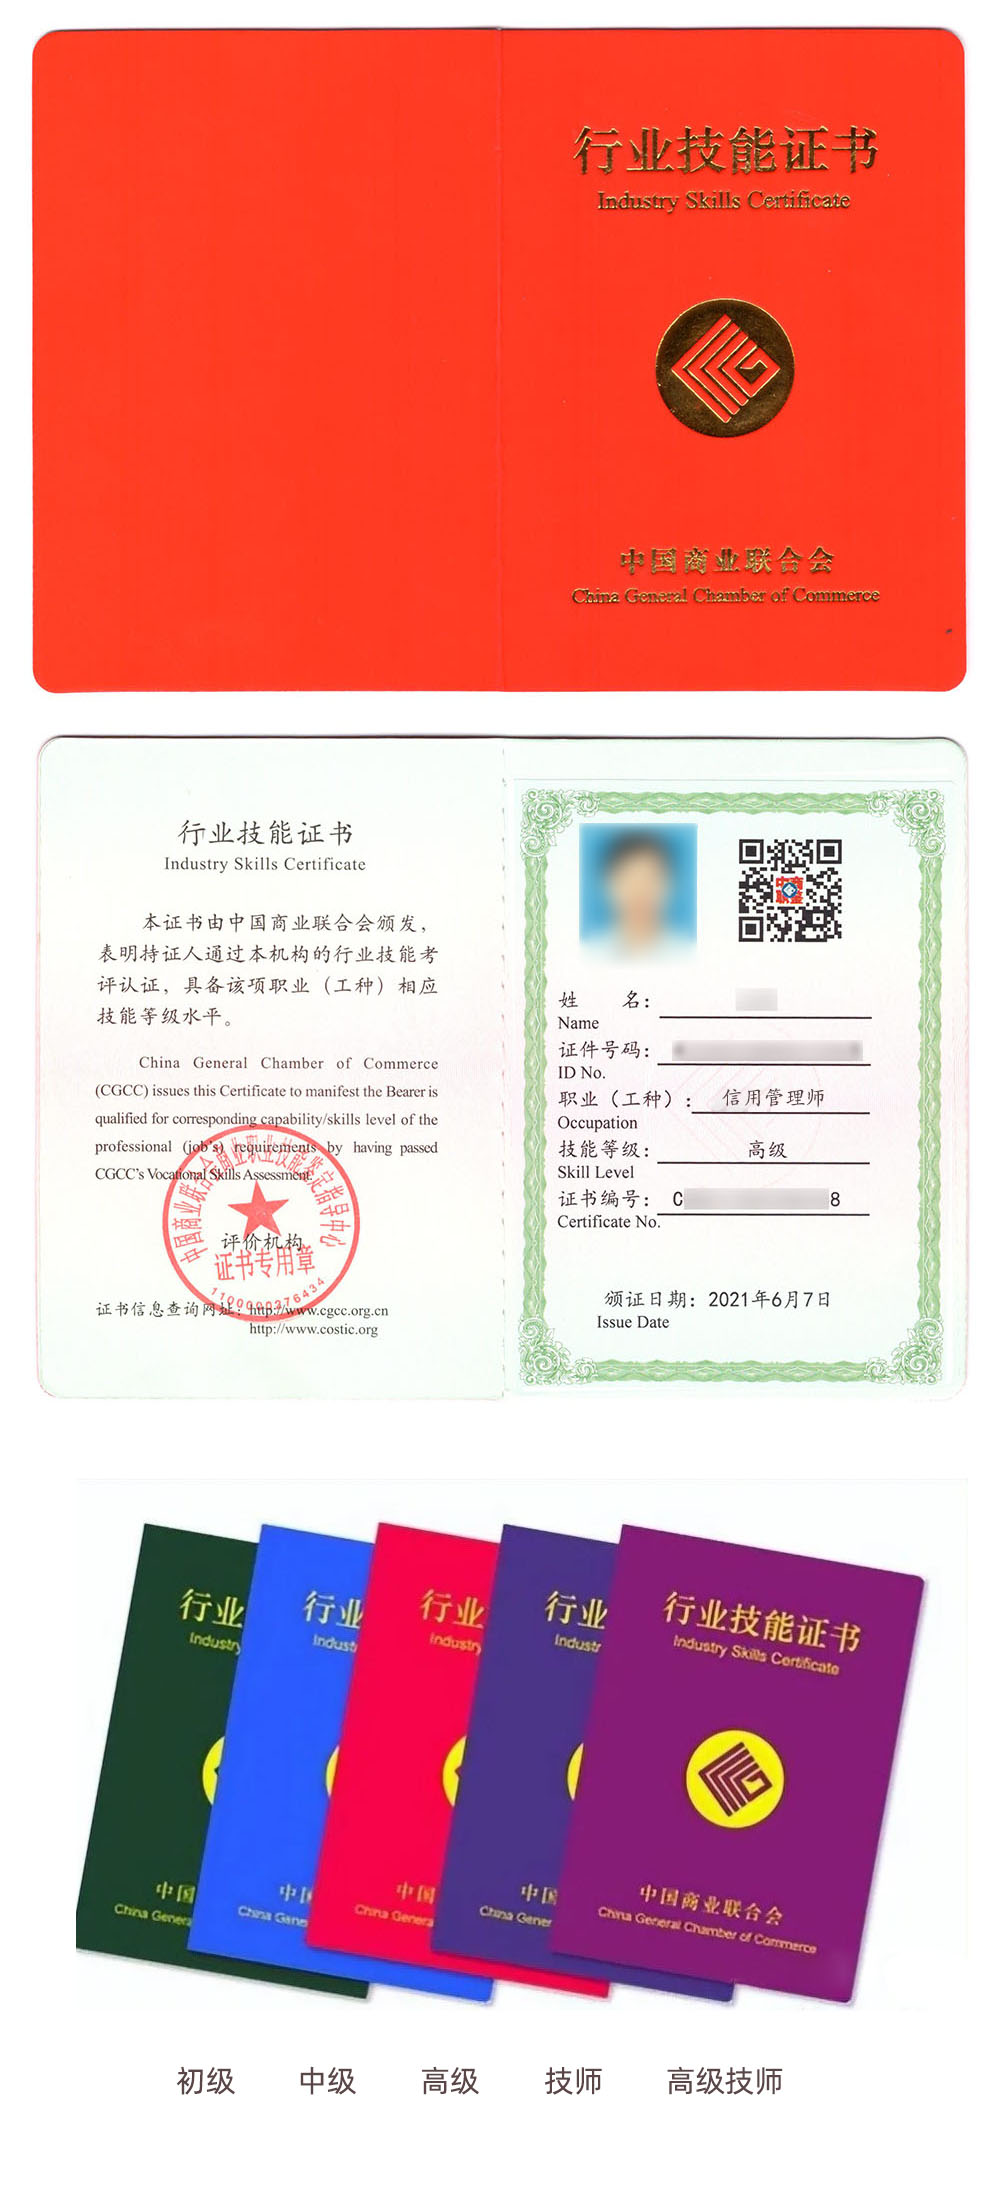 中国商业联合会商业职业技能鉴定中心 行业技能证书 信用管理师证证书样本